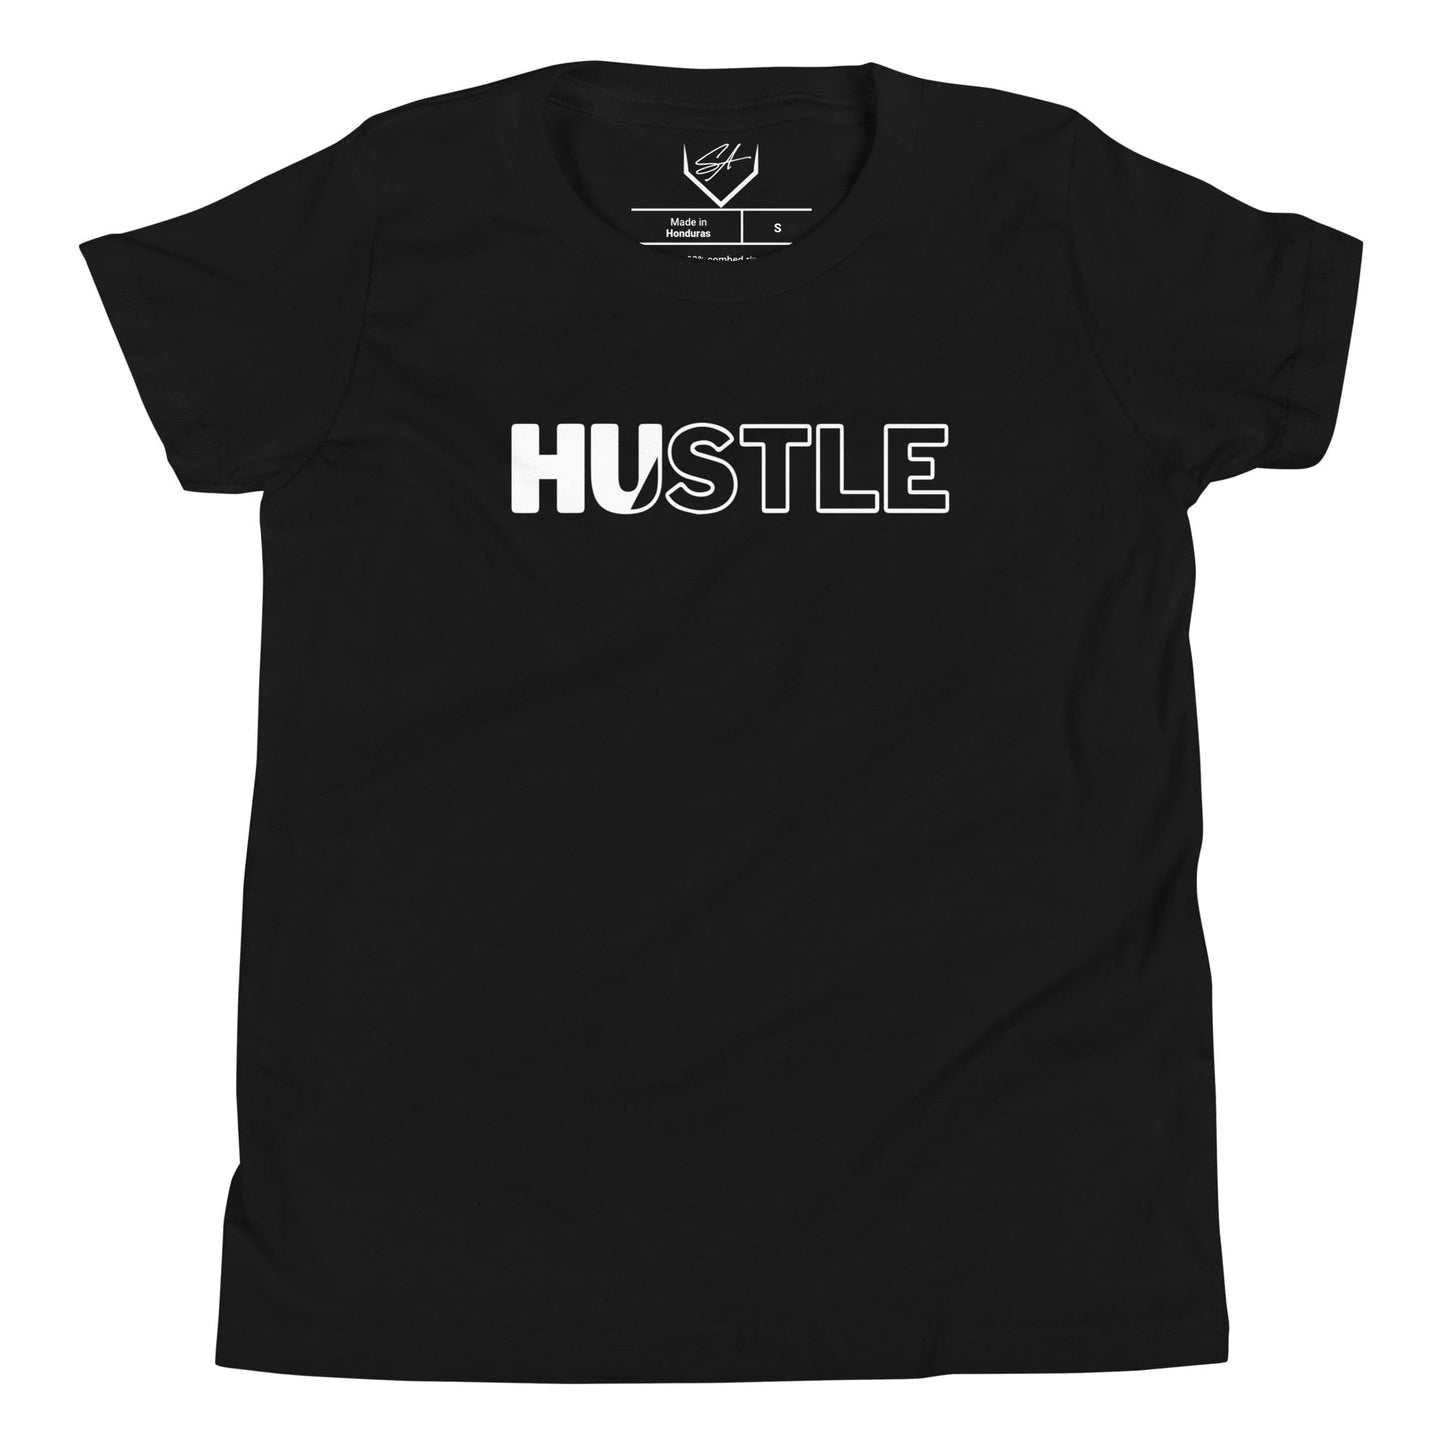 Hustle - Youth Tee